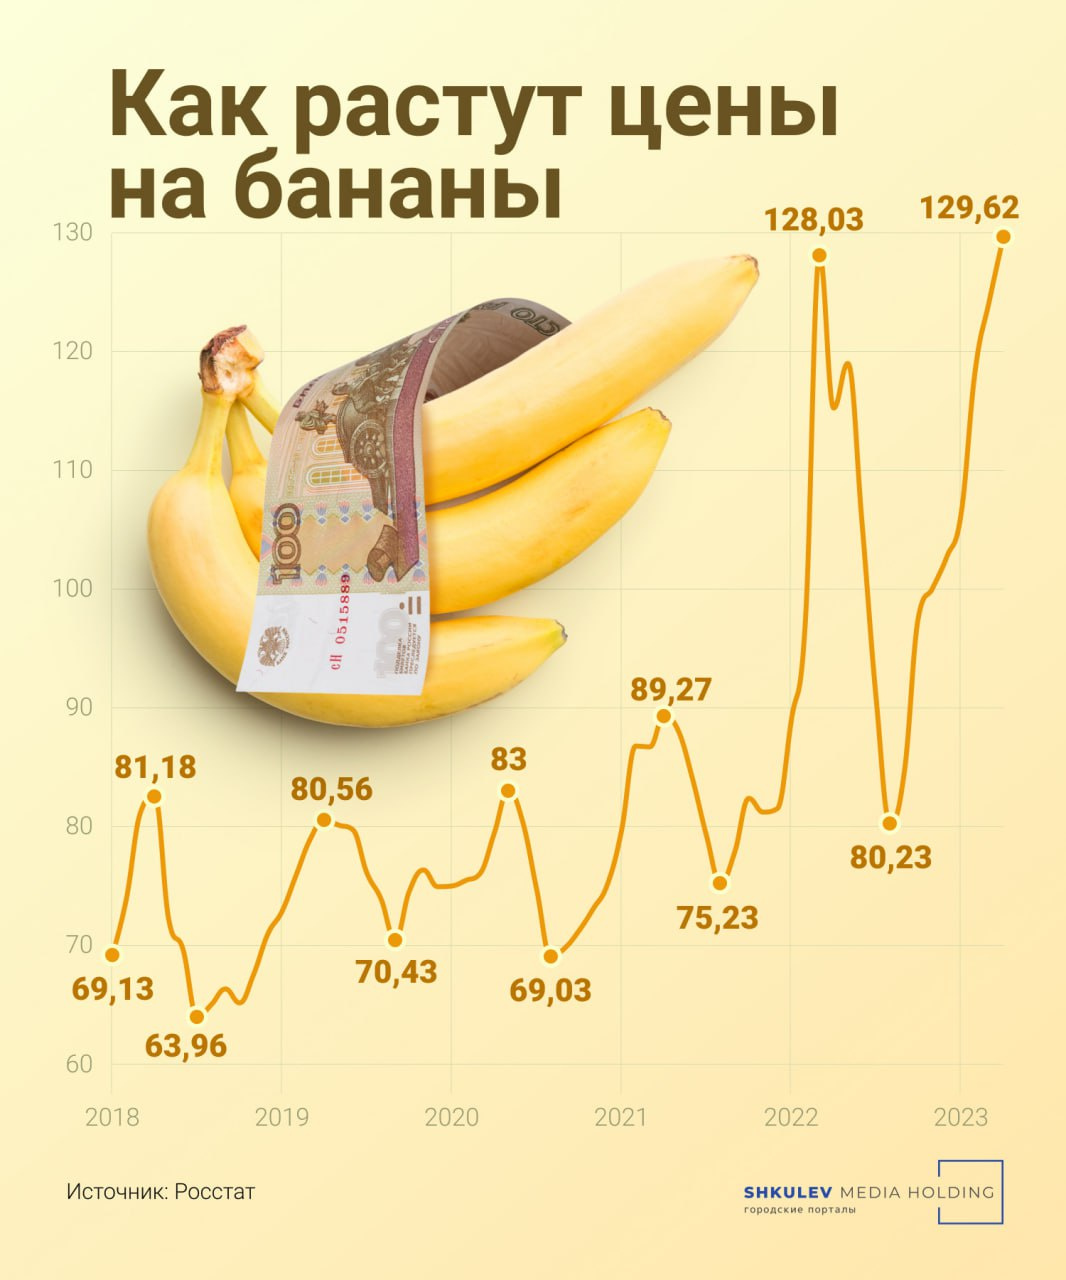 По сравнению с 2018 годом сейчас на прилавках должны лежать золотые бананы